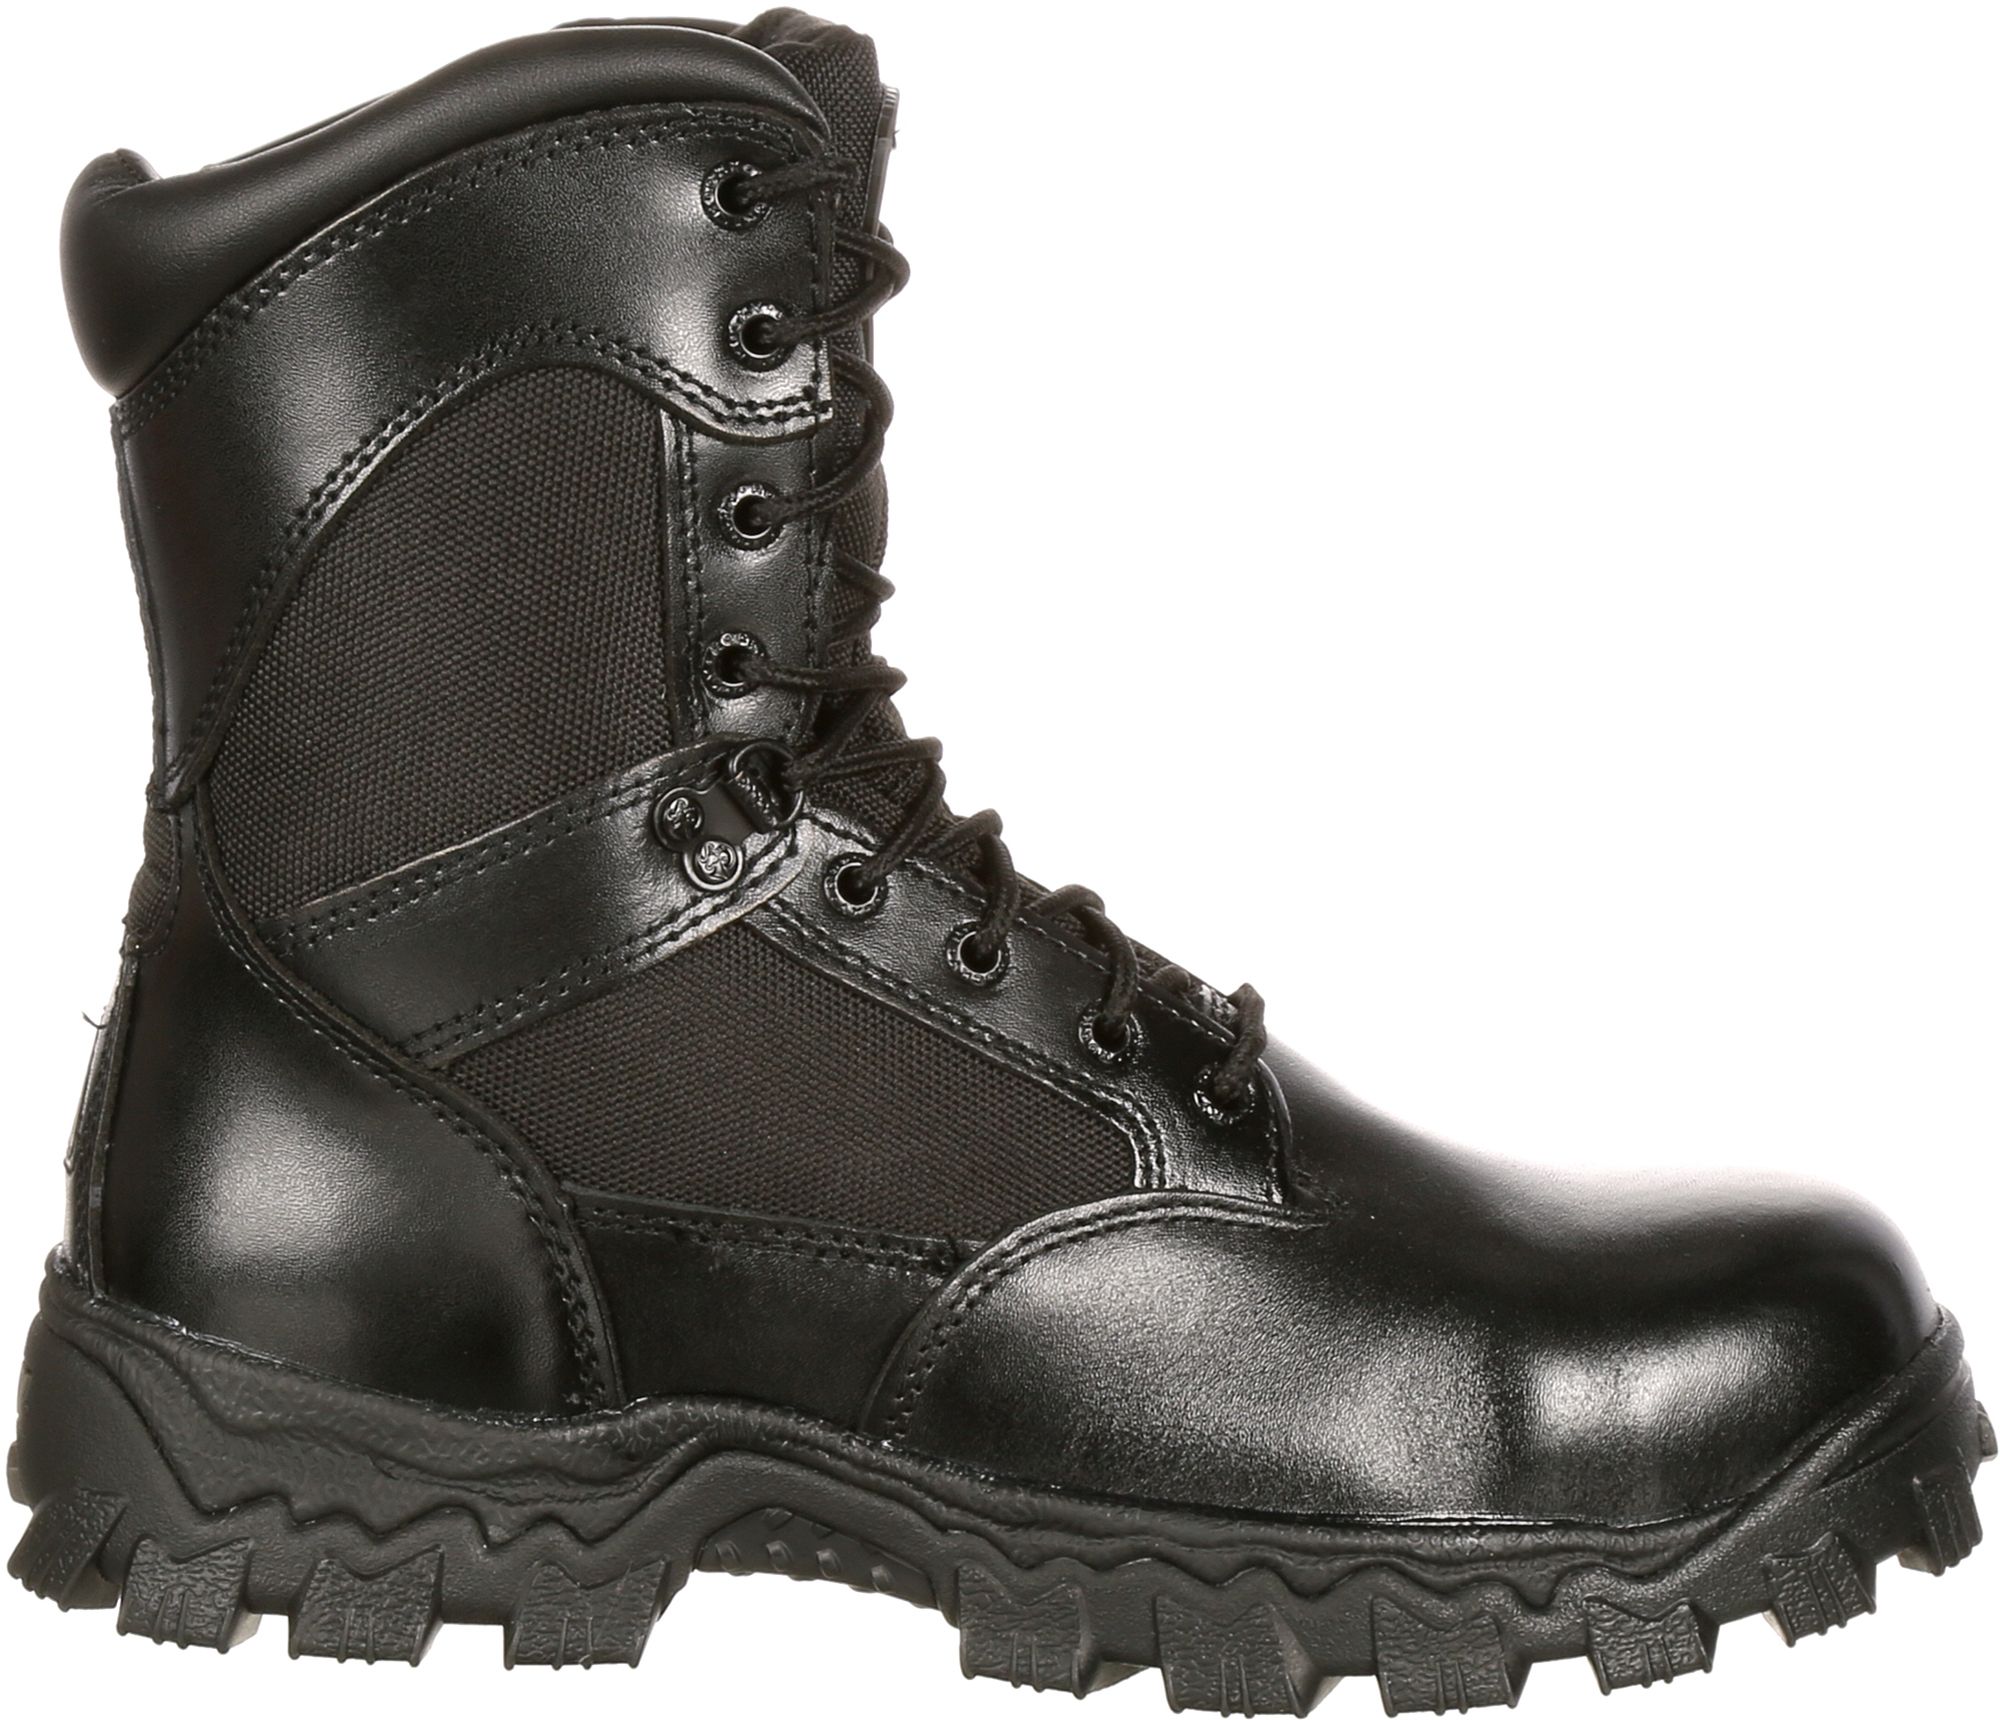 black waterproof steel toe boots